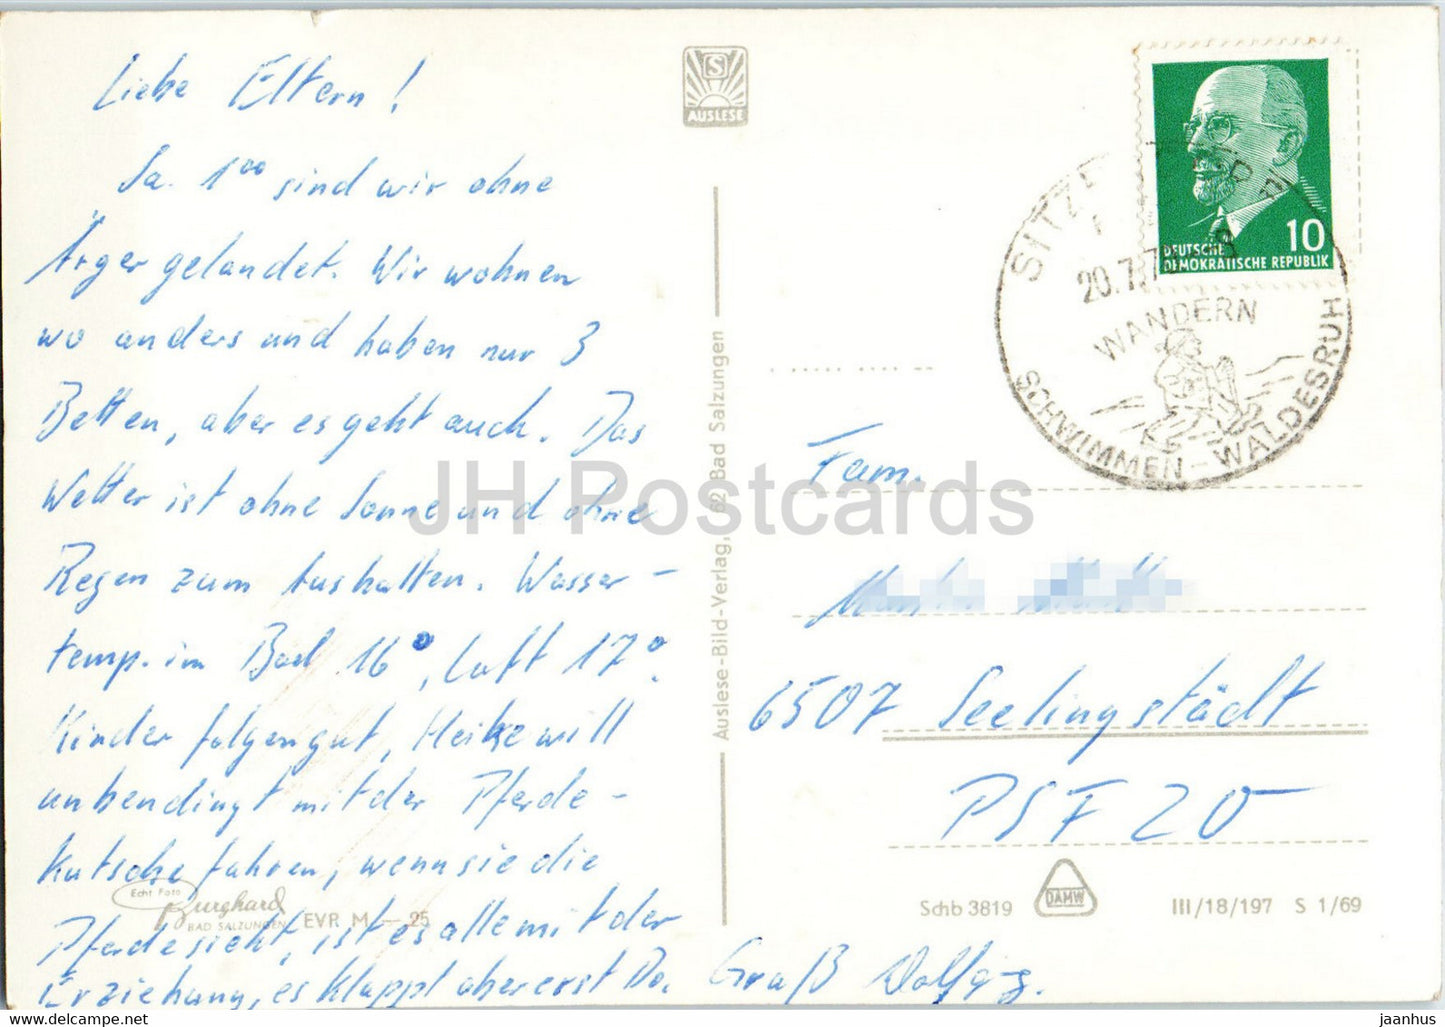 Schwarzburg im romantischen Schwarzatal - Pferdekutsche - alte Postkarte - Deutschland DDR - gebraucht